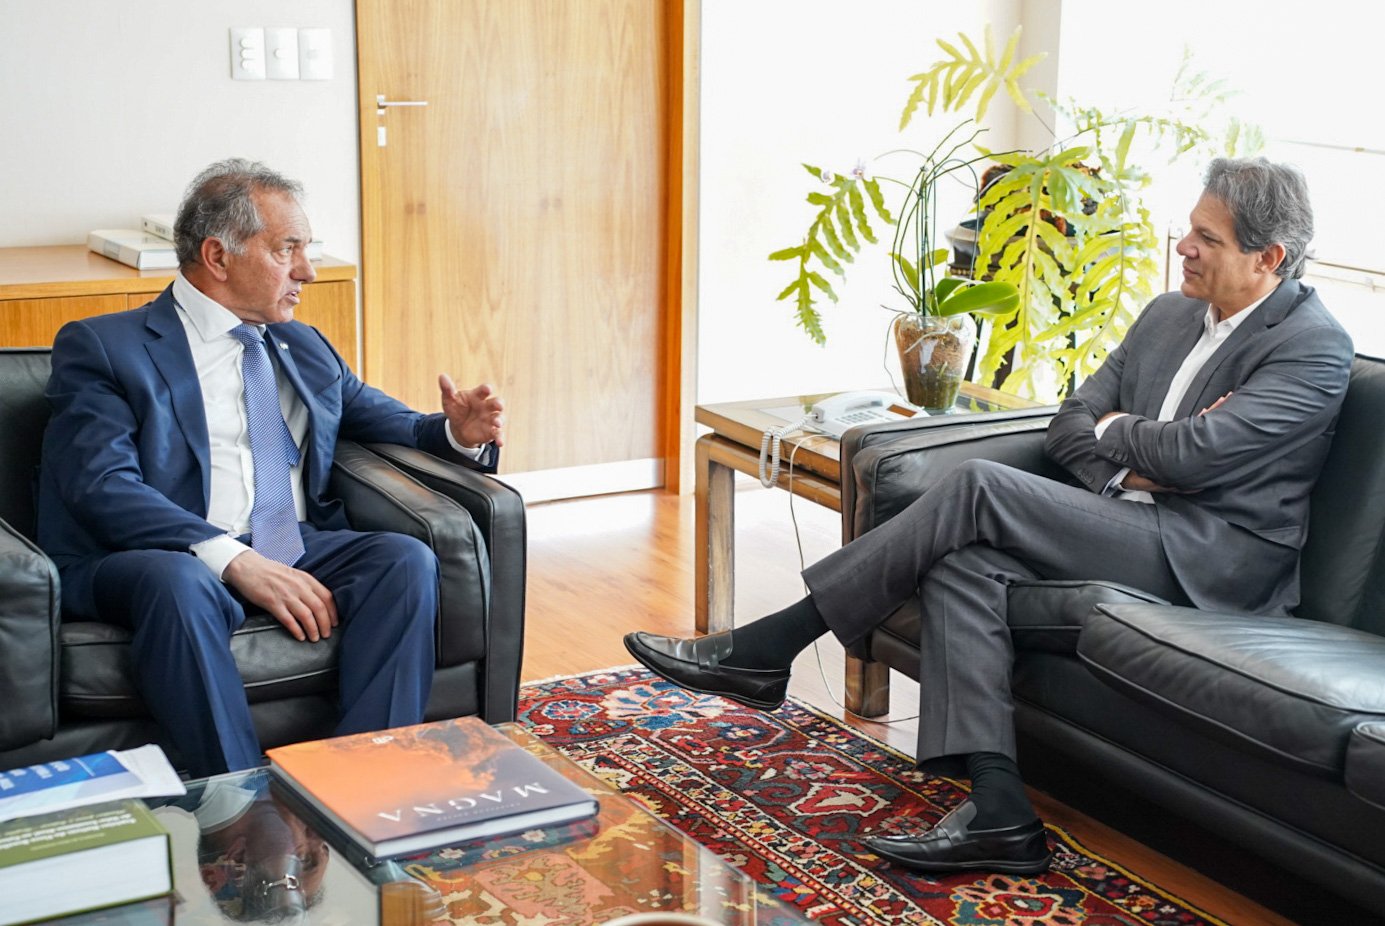 Embaixador da Argentina conversou sobre moeda comum com Fernando Haddad, novo ministro da Economia - Foto: Reprodução/Twitter @danielscioli